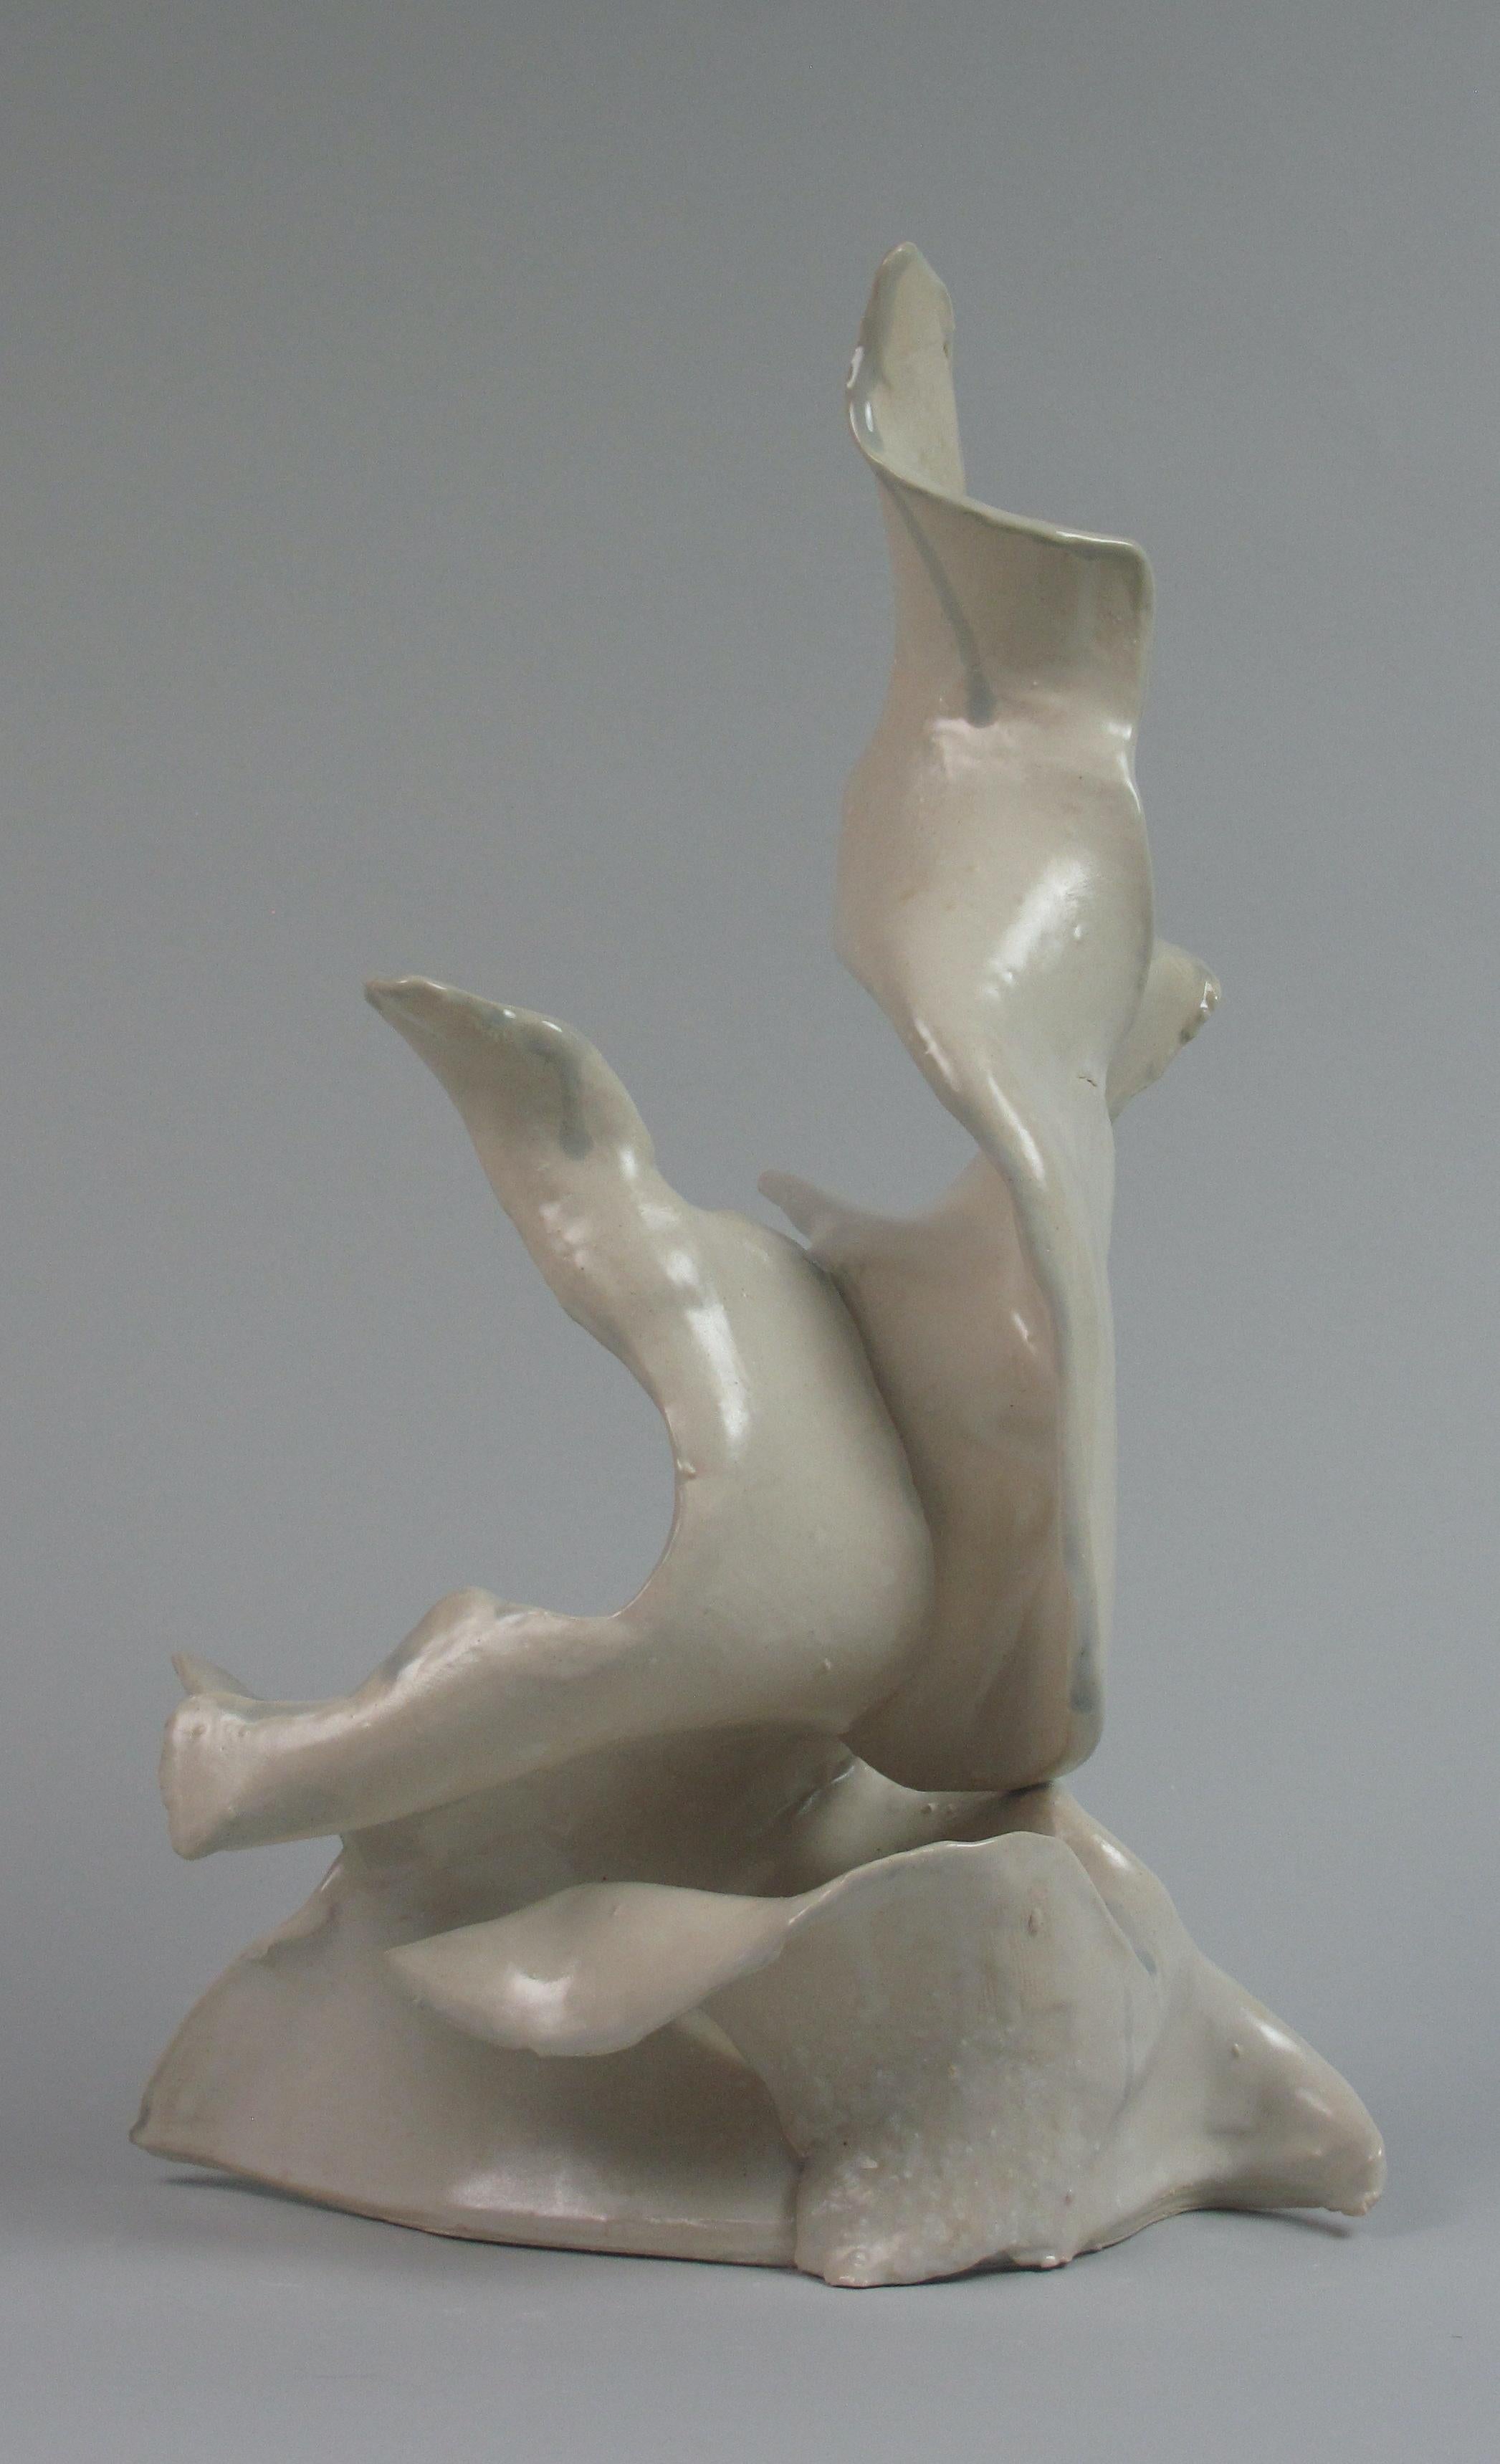 "Quiet", gestural, ceramic, sculpture, white, cream, teal, stoneware - Sculpture by Sara Fine-Wilson